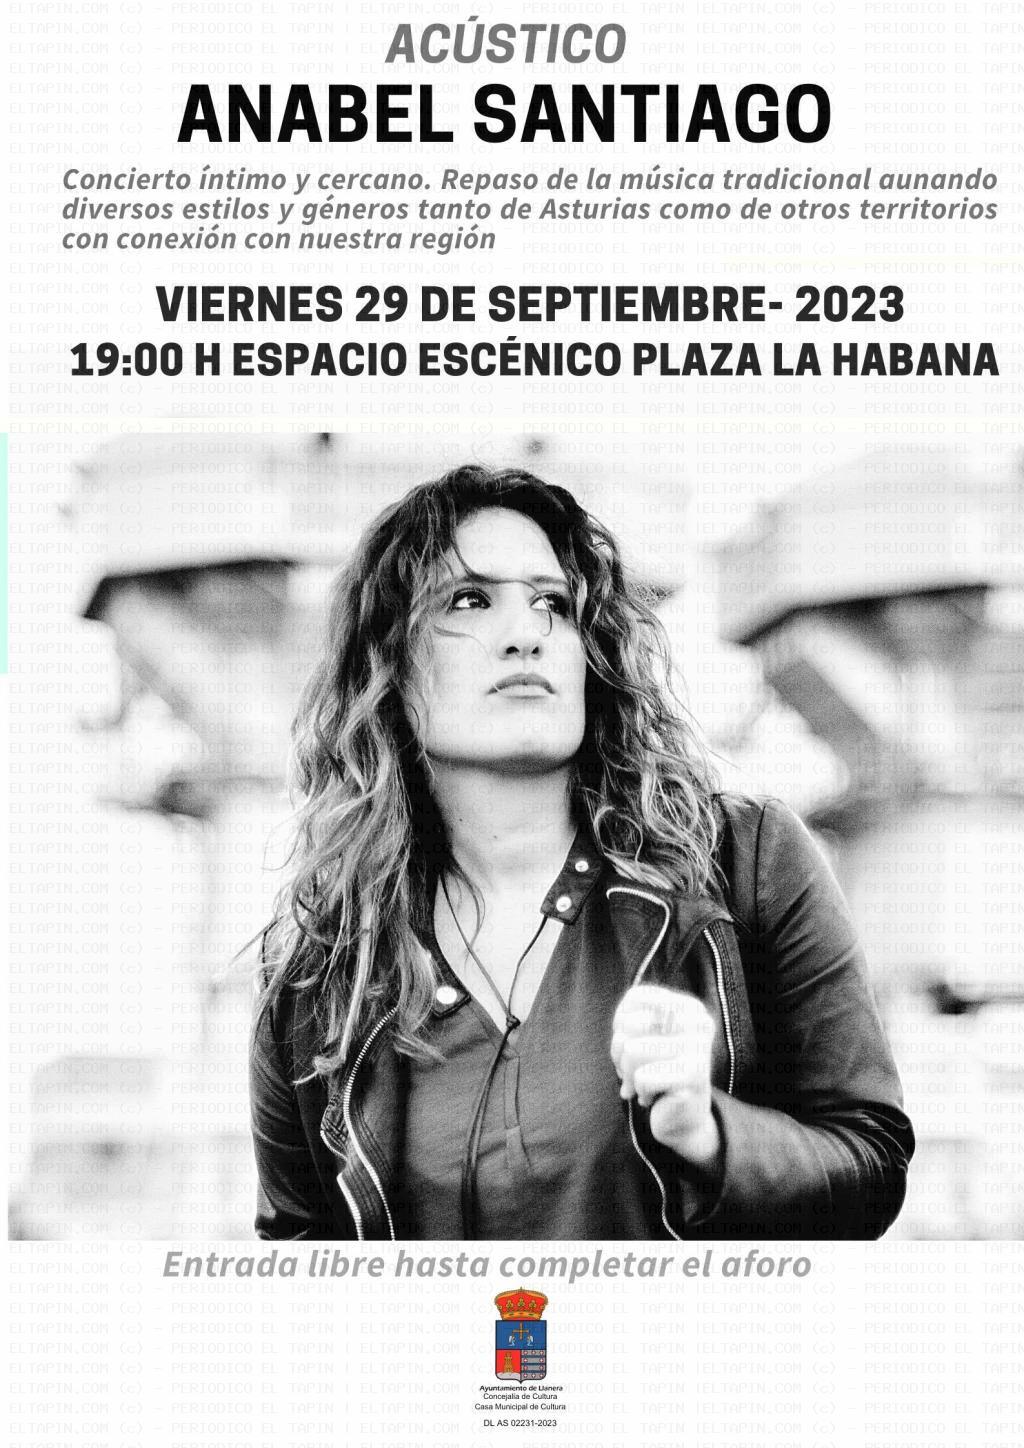 El Tapin - Anabel Santiago actuará el viernes 29 de septiembre en la Plaza de La Habana